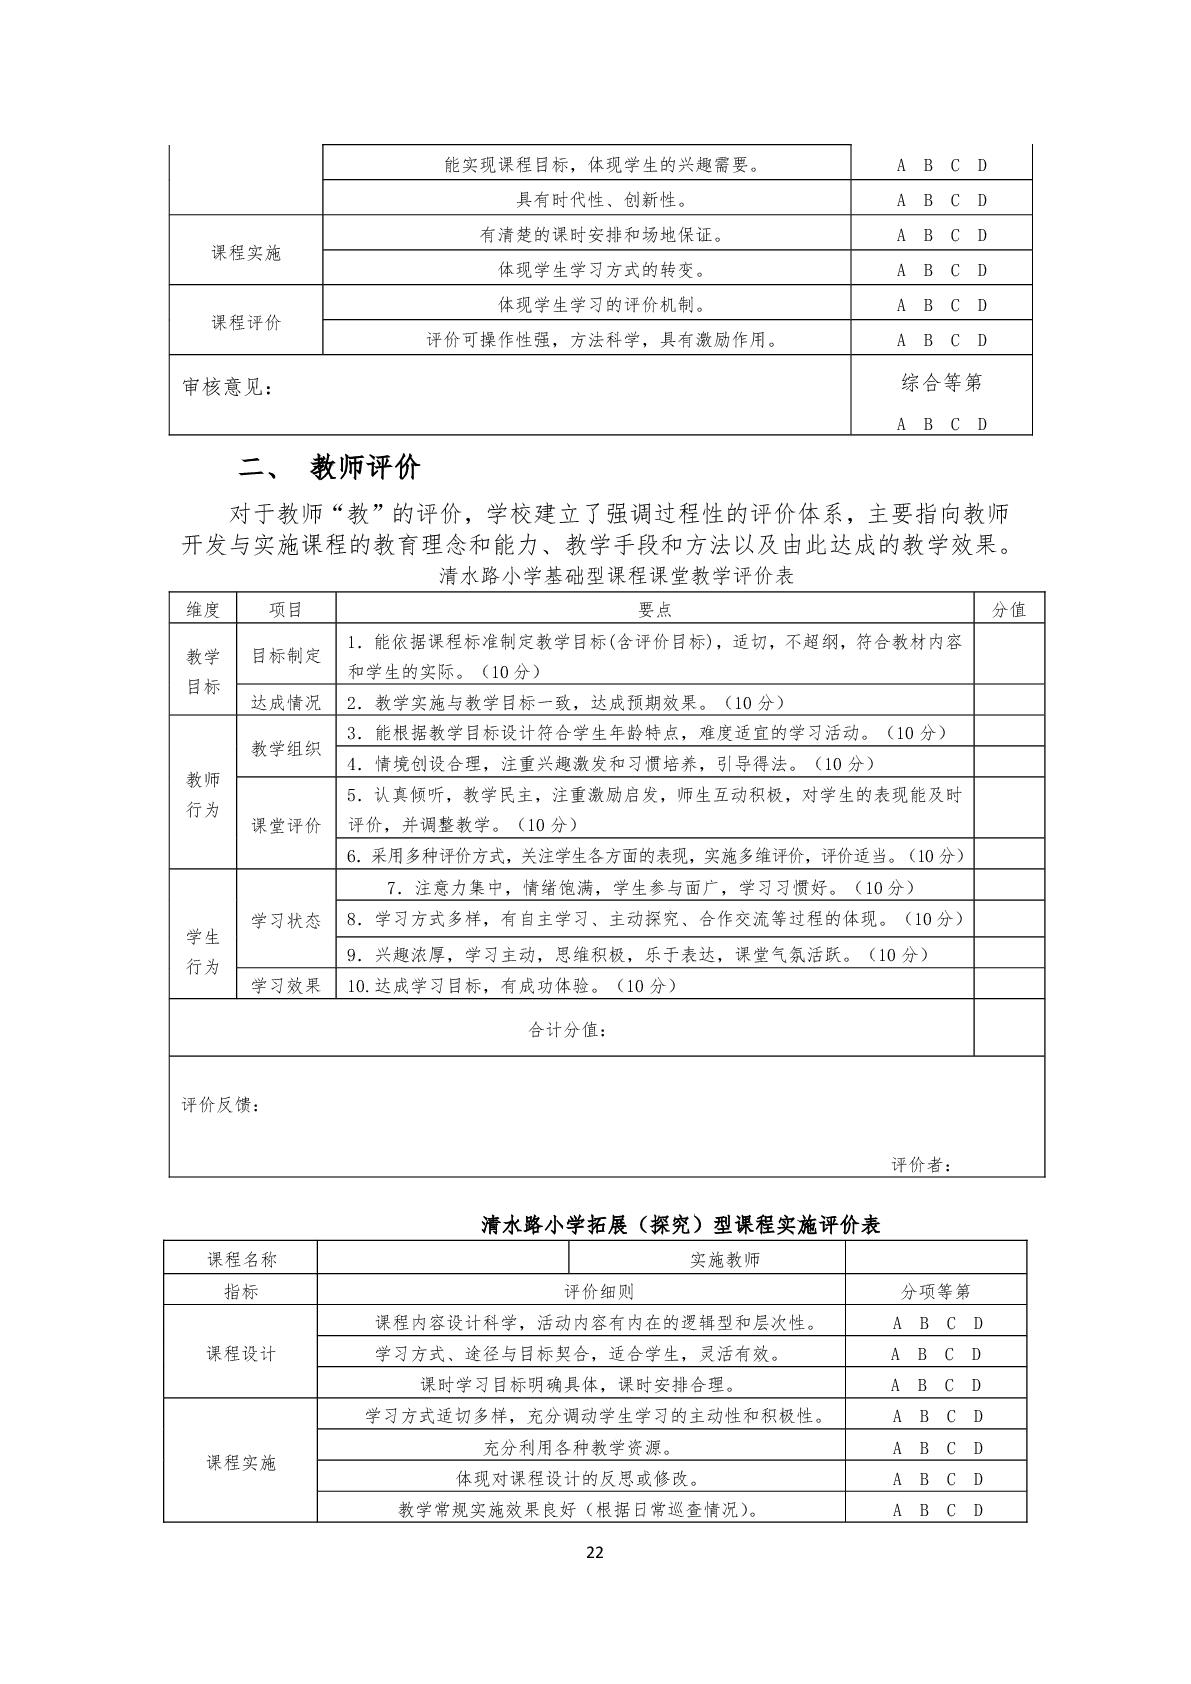 2.上海市嘉定区清水路小学2020学年度课程计划-022.jpg